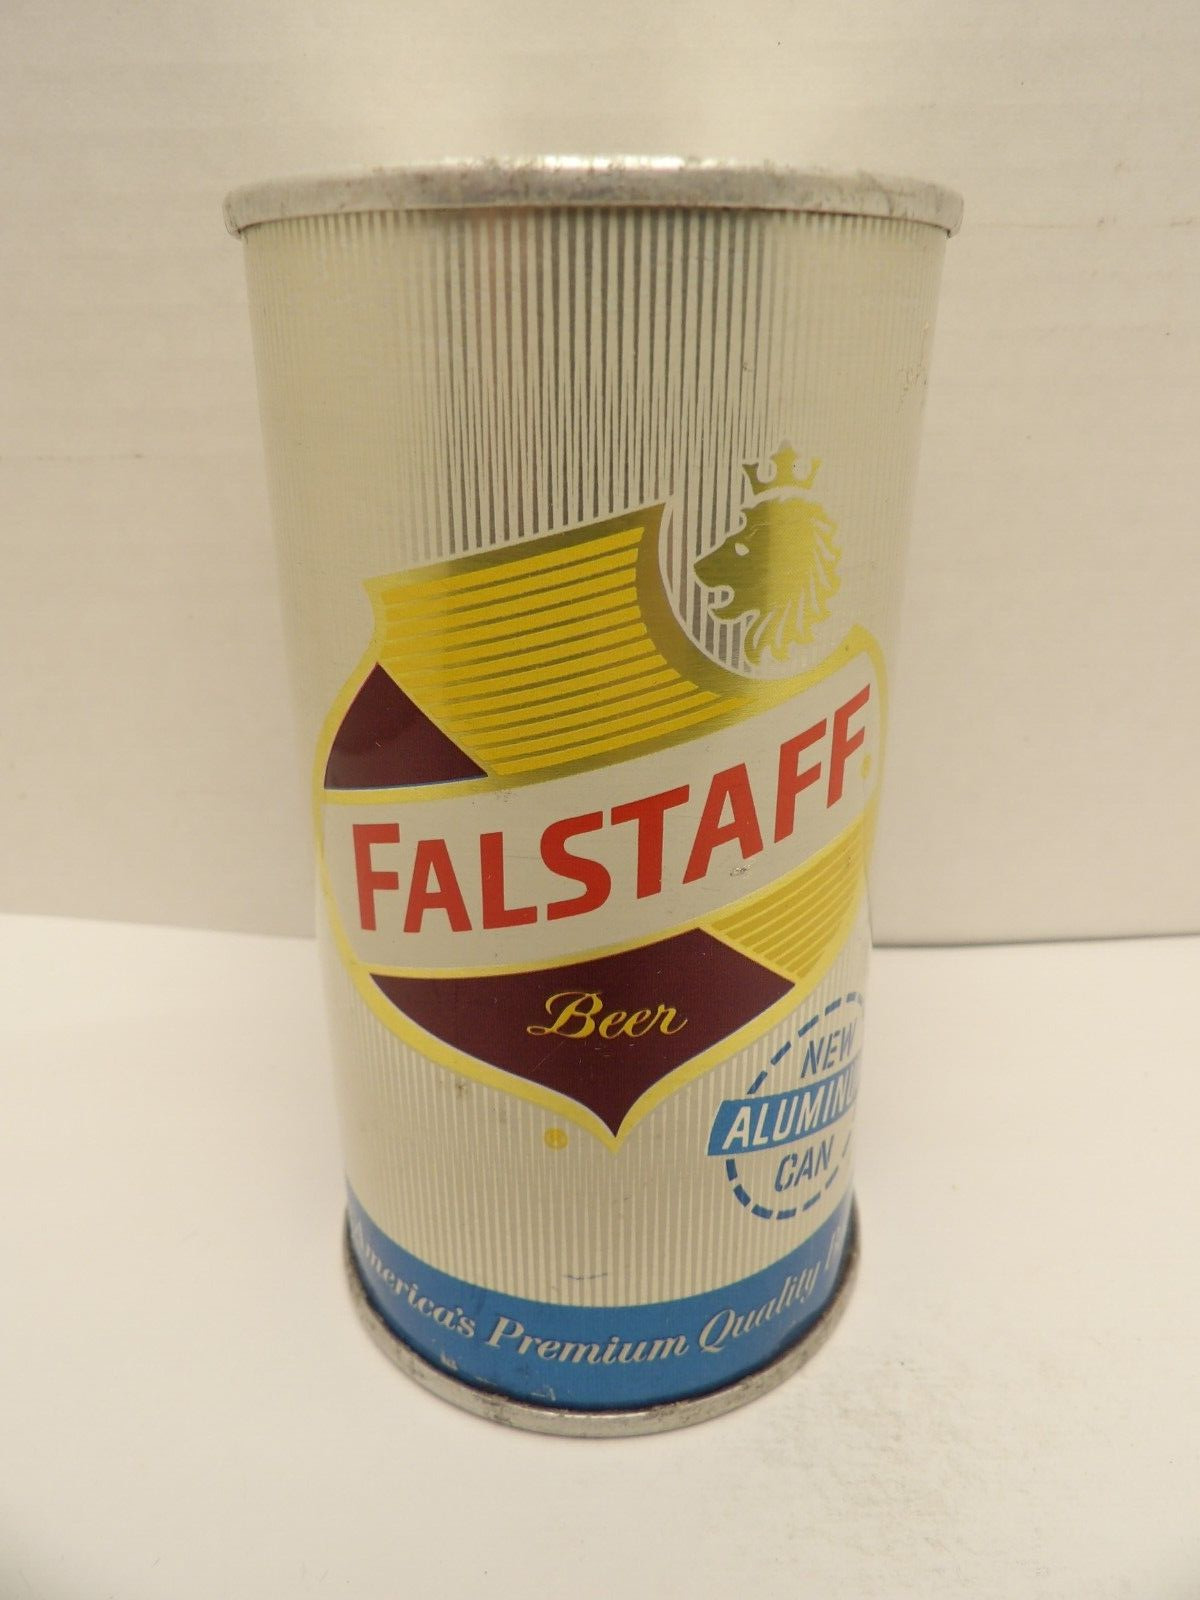 FALSTAFF NEW 3 PC. STRAIGHT ALUMINUM PULL FAN TAB BEER CAN #63-29 MISSOURI